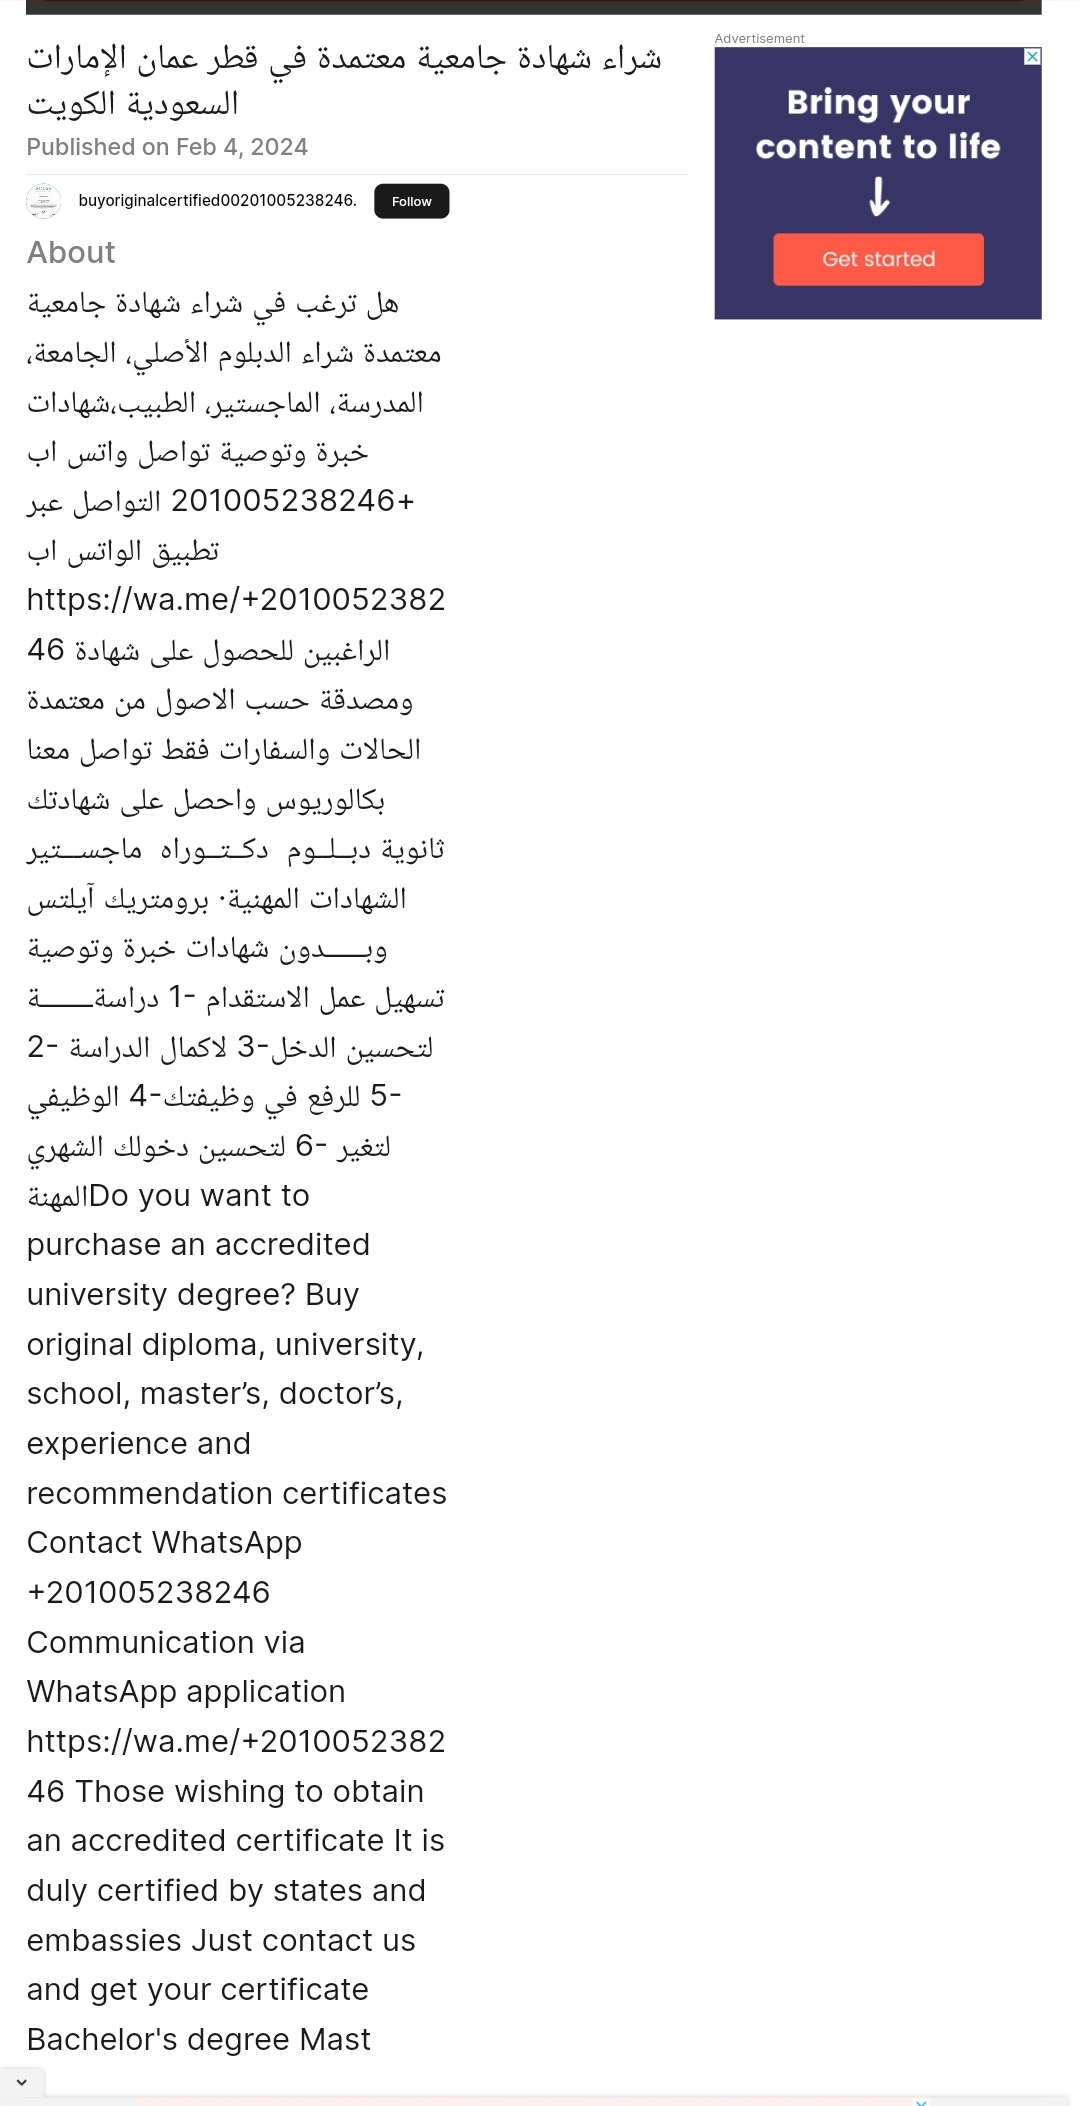 شهادة جامعية أصلية للبيع في قطر عمان الكويت السعود